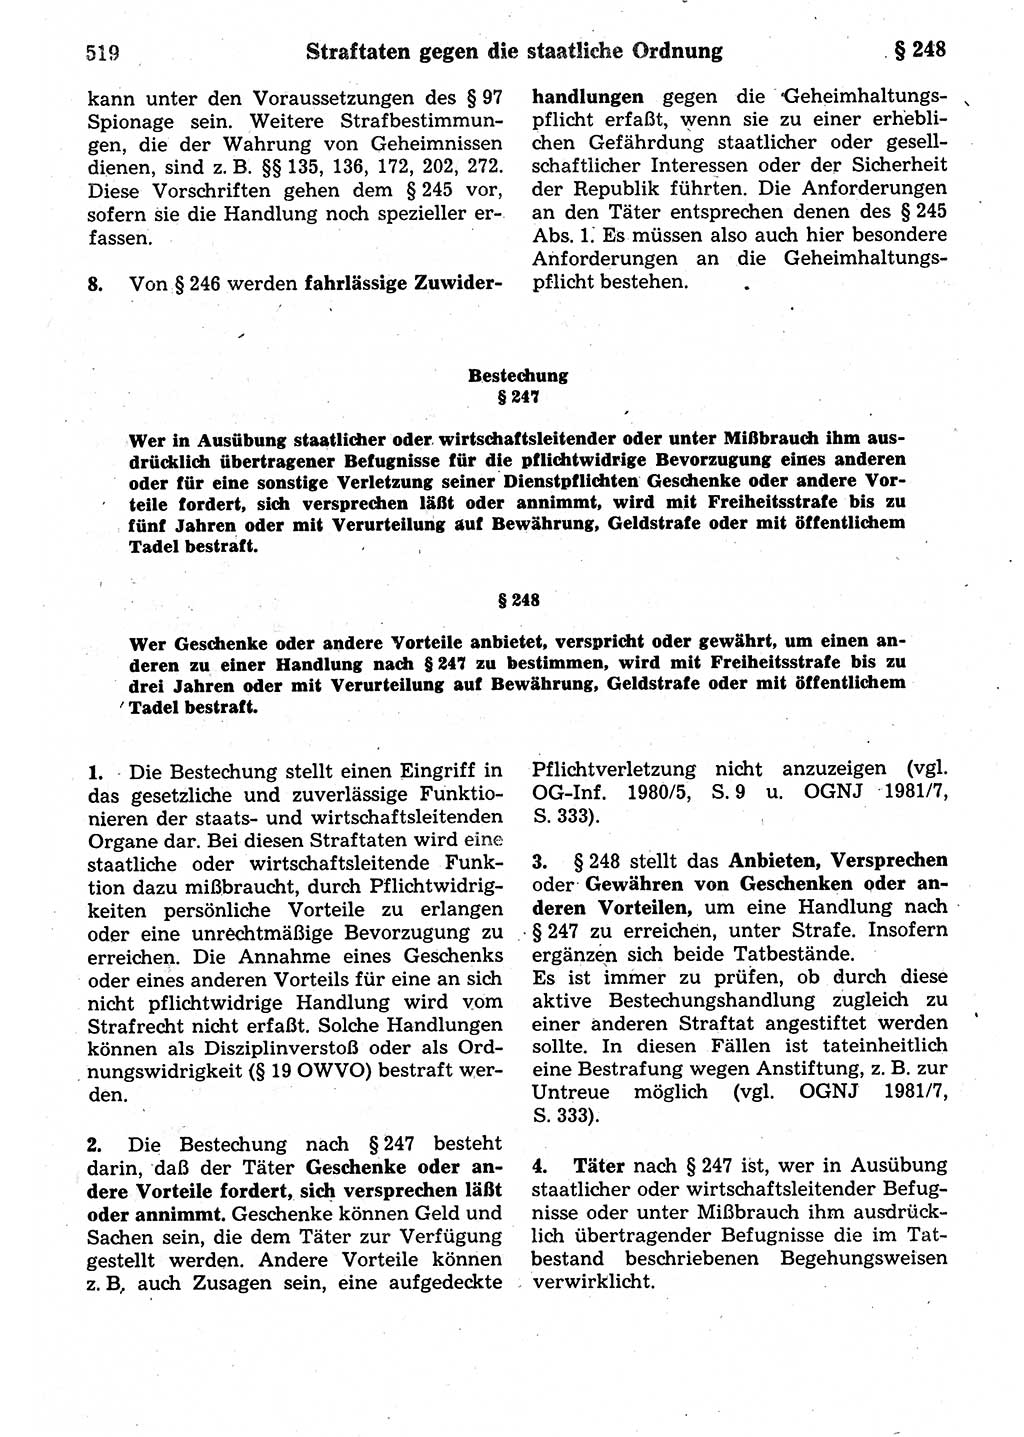 Strafrecht der Deutschen Demokratischen Republik (DDR), Kommentar zum Strafgesetzbuch (StGB) 1987, Seite 519 (Strafr. DDR Komm. StGB 1987, S. 519)